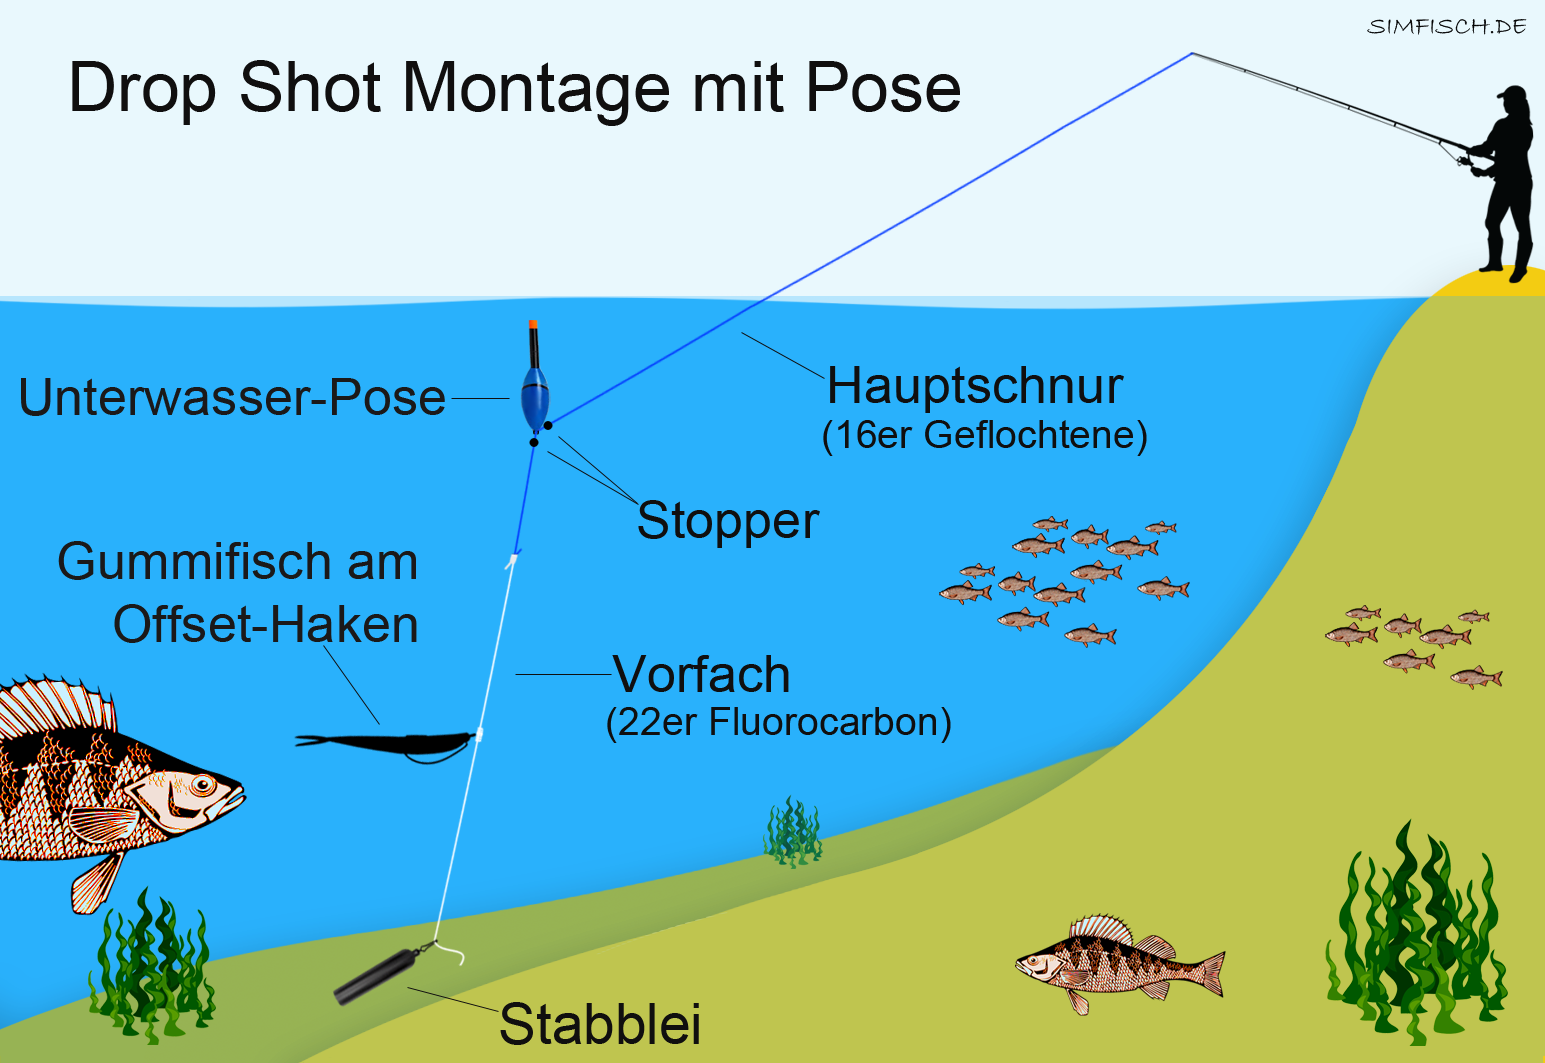 Drop Shot Angeln vom Ufer | Simfisch.de - Angeln und Outdoor!